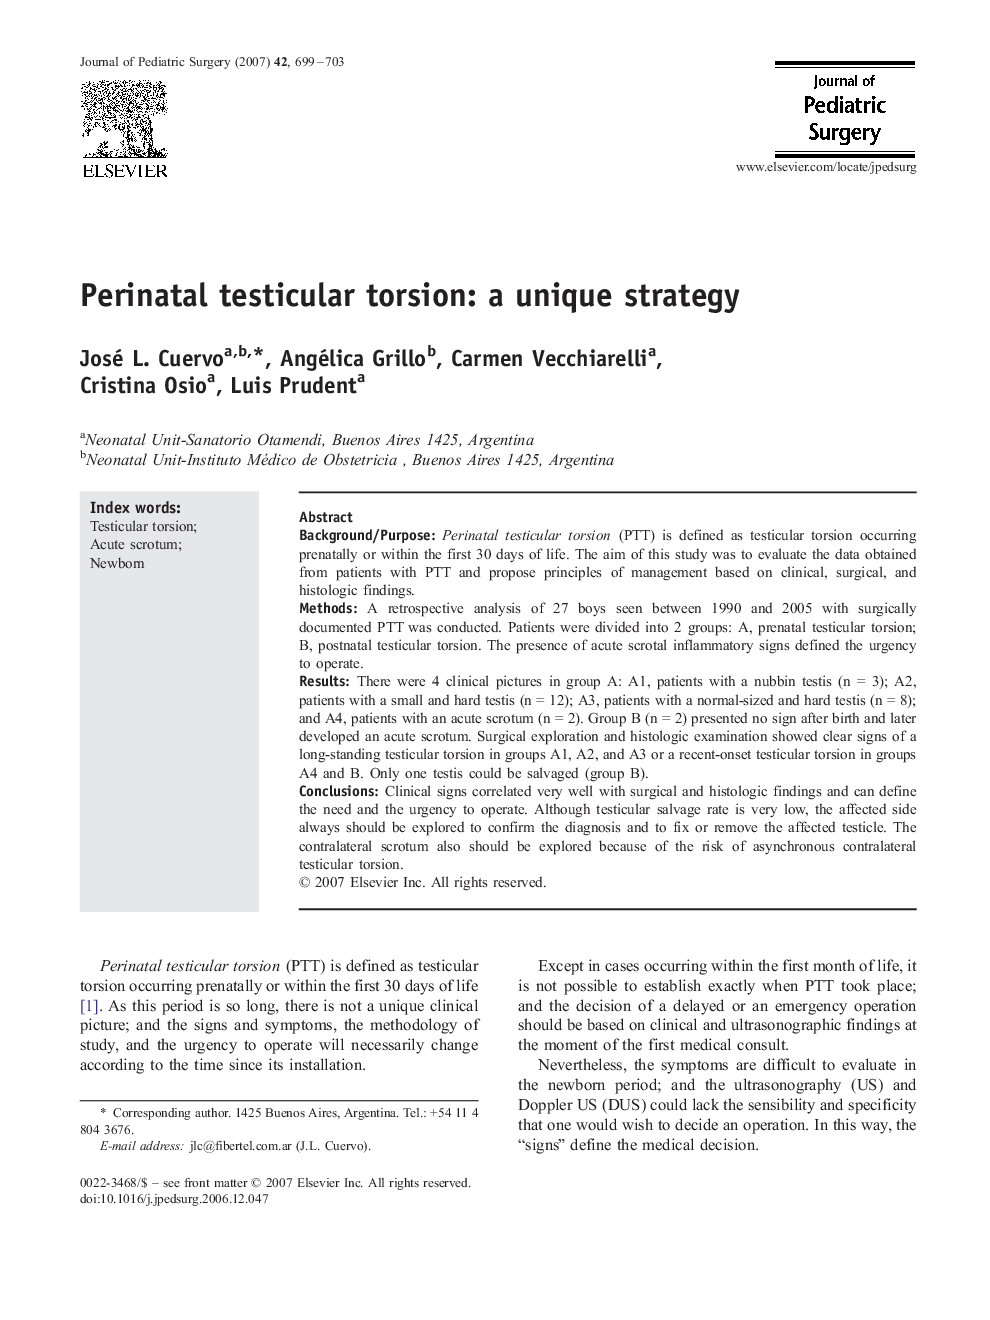 Perinatal testicular torsion: a unique strategy